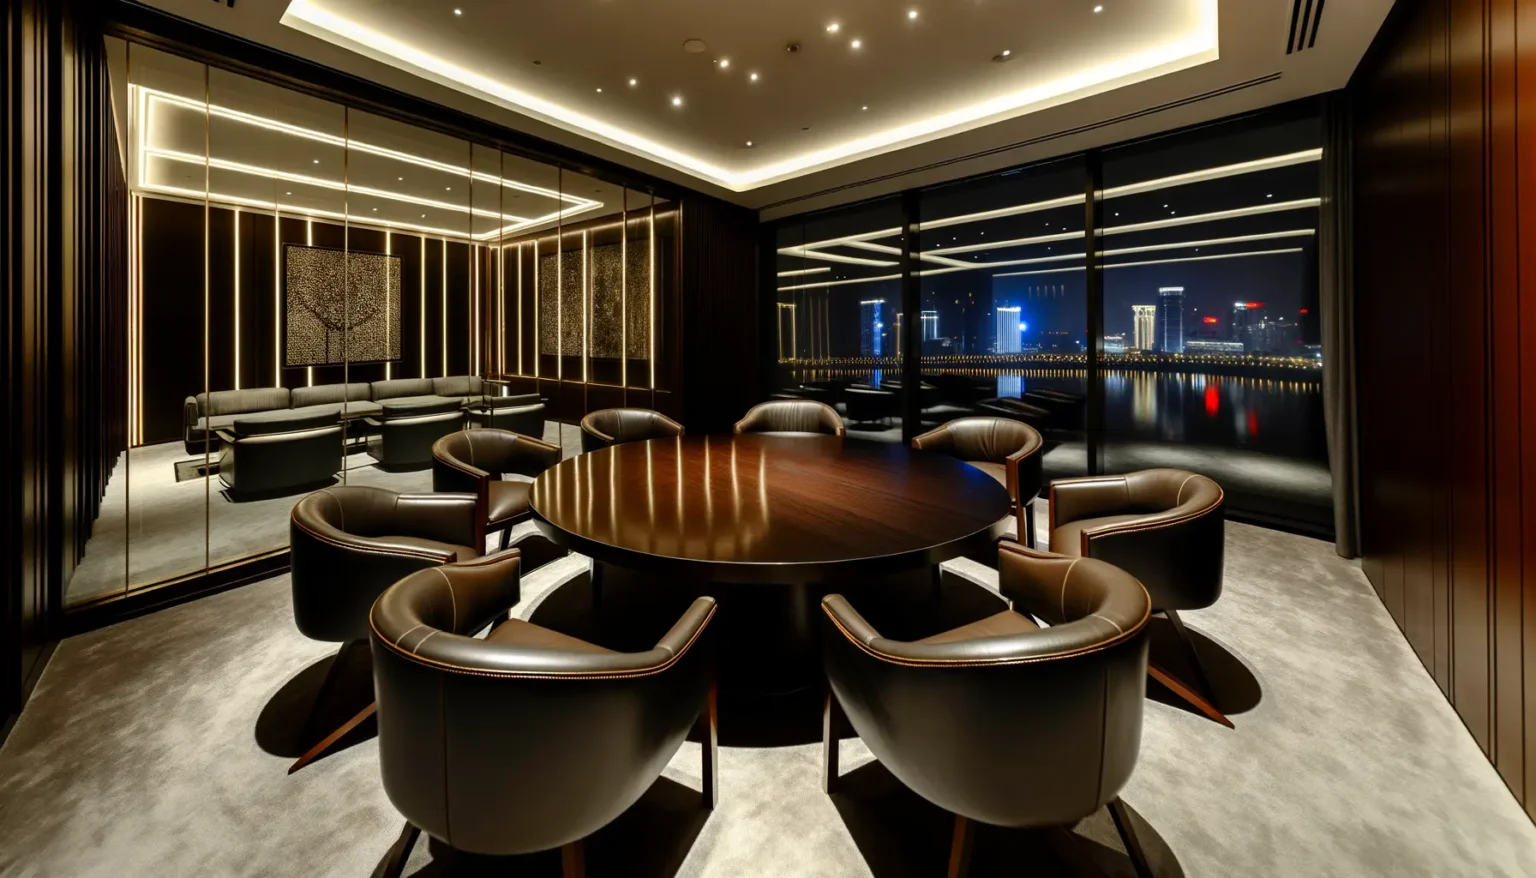 Ein luxuriöser Konferenzraum bei Nacht mit einem großen ovalen Holztisch und umgebenden Lederstühlen. Der Raum hat eine moderne Beleuchtung und bodentiefe Fenster, durch die man auf eine beleuchtete Stadtansicht mit Spiegelungen im Wasser blickt.